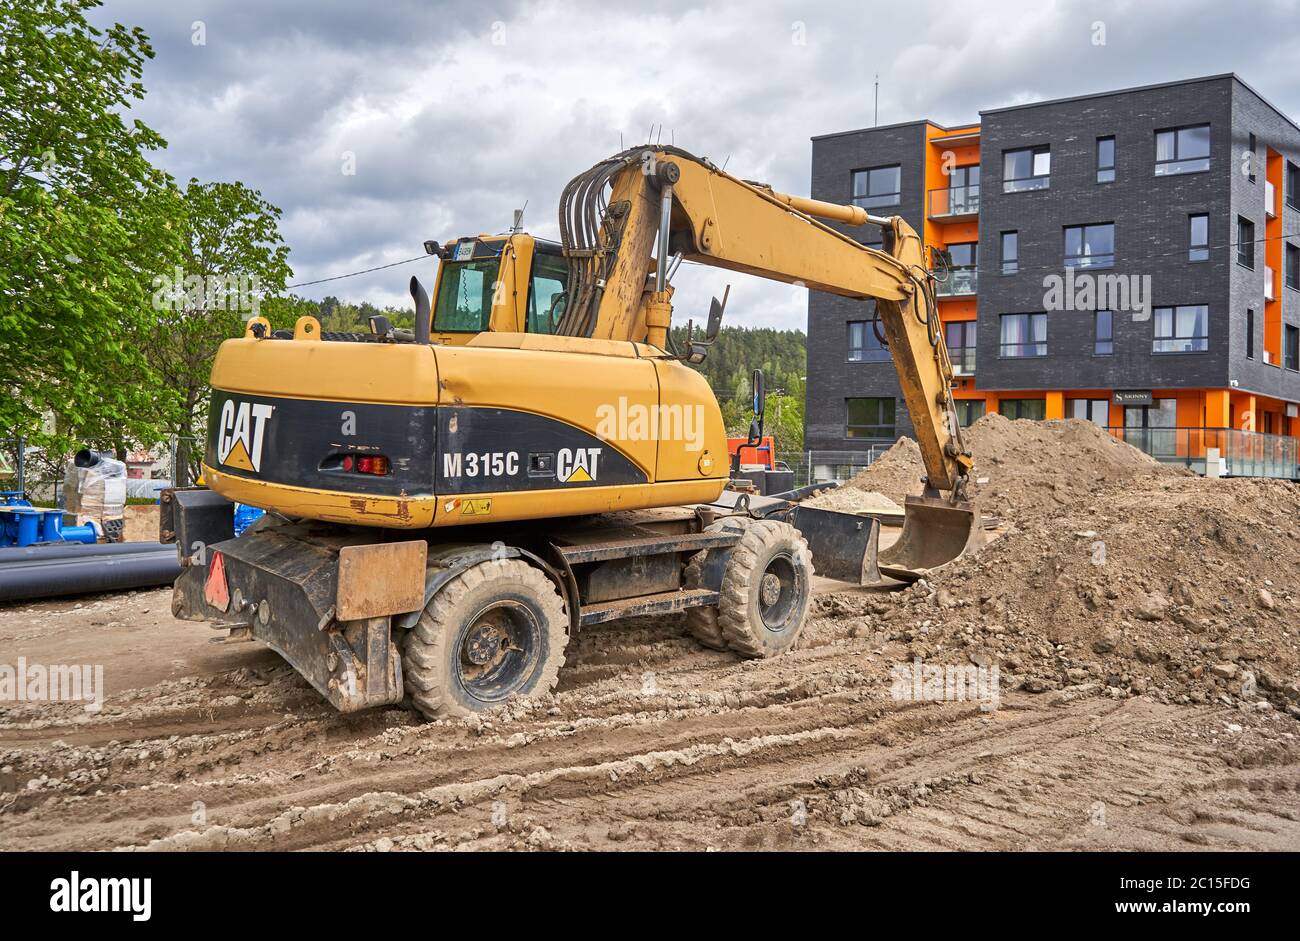 Huge excavator in construction site Stock Photo